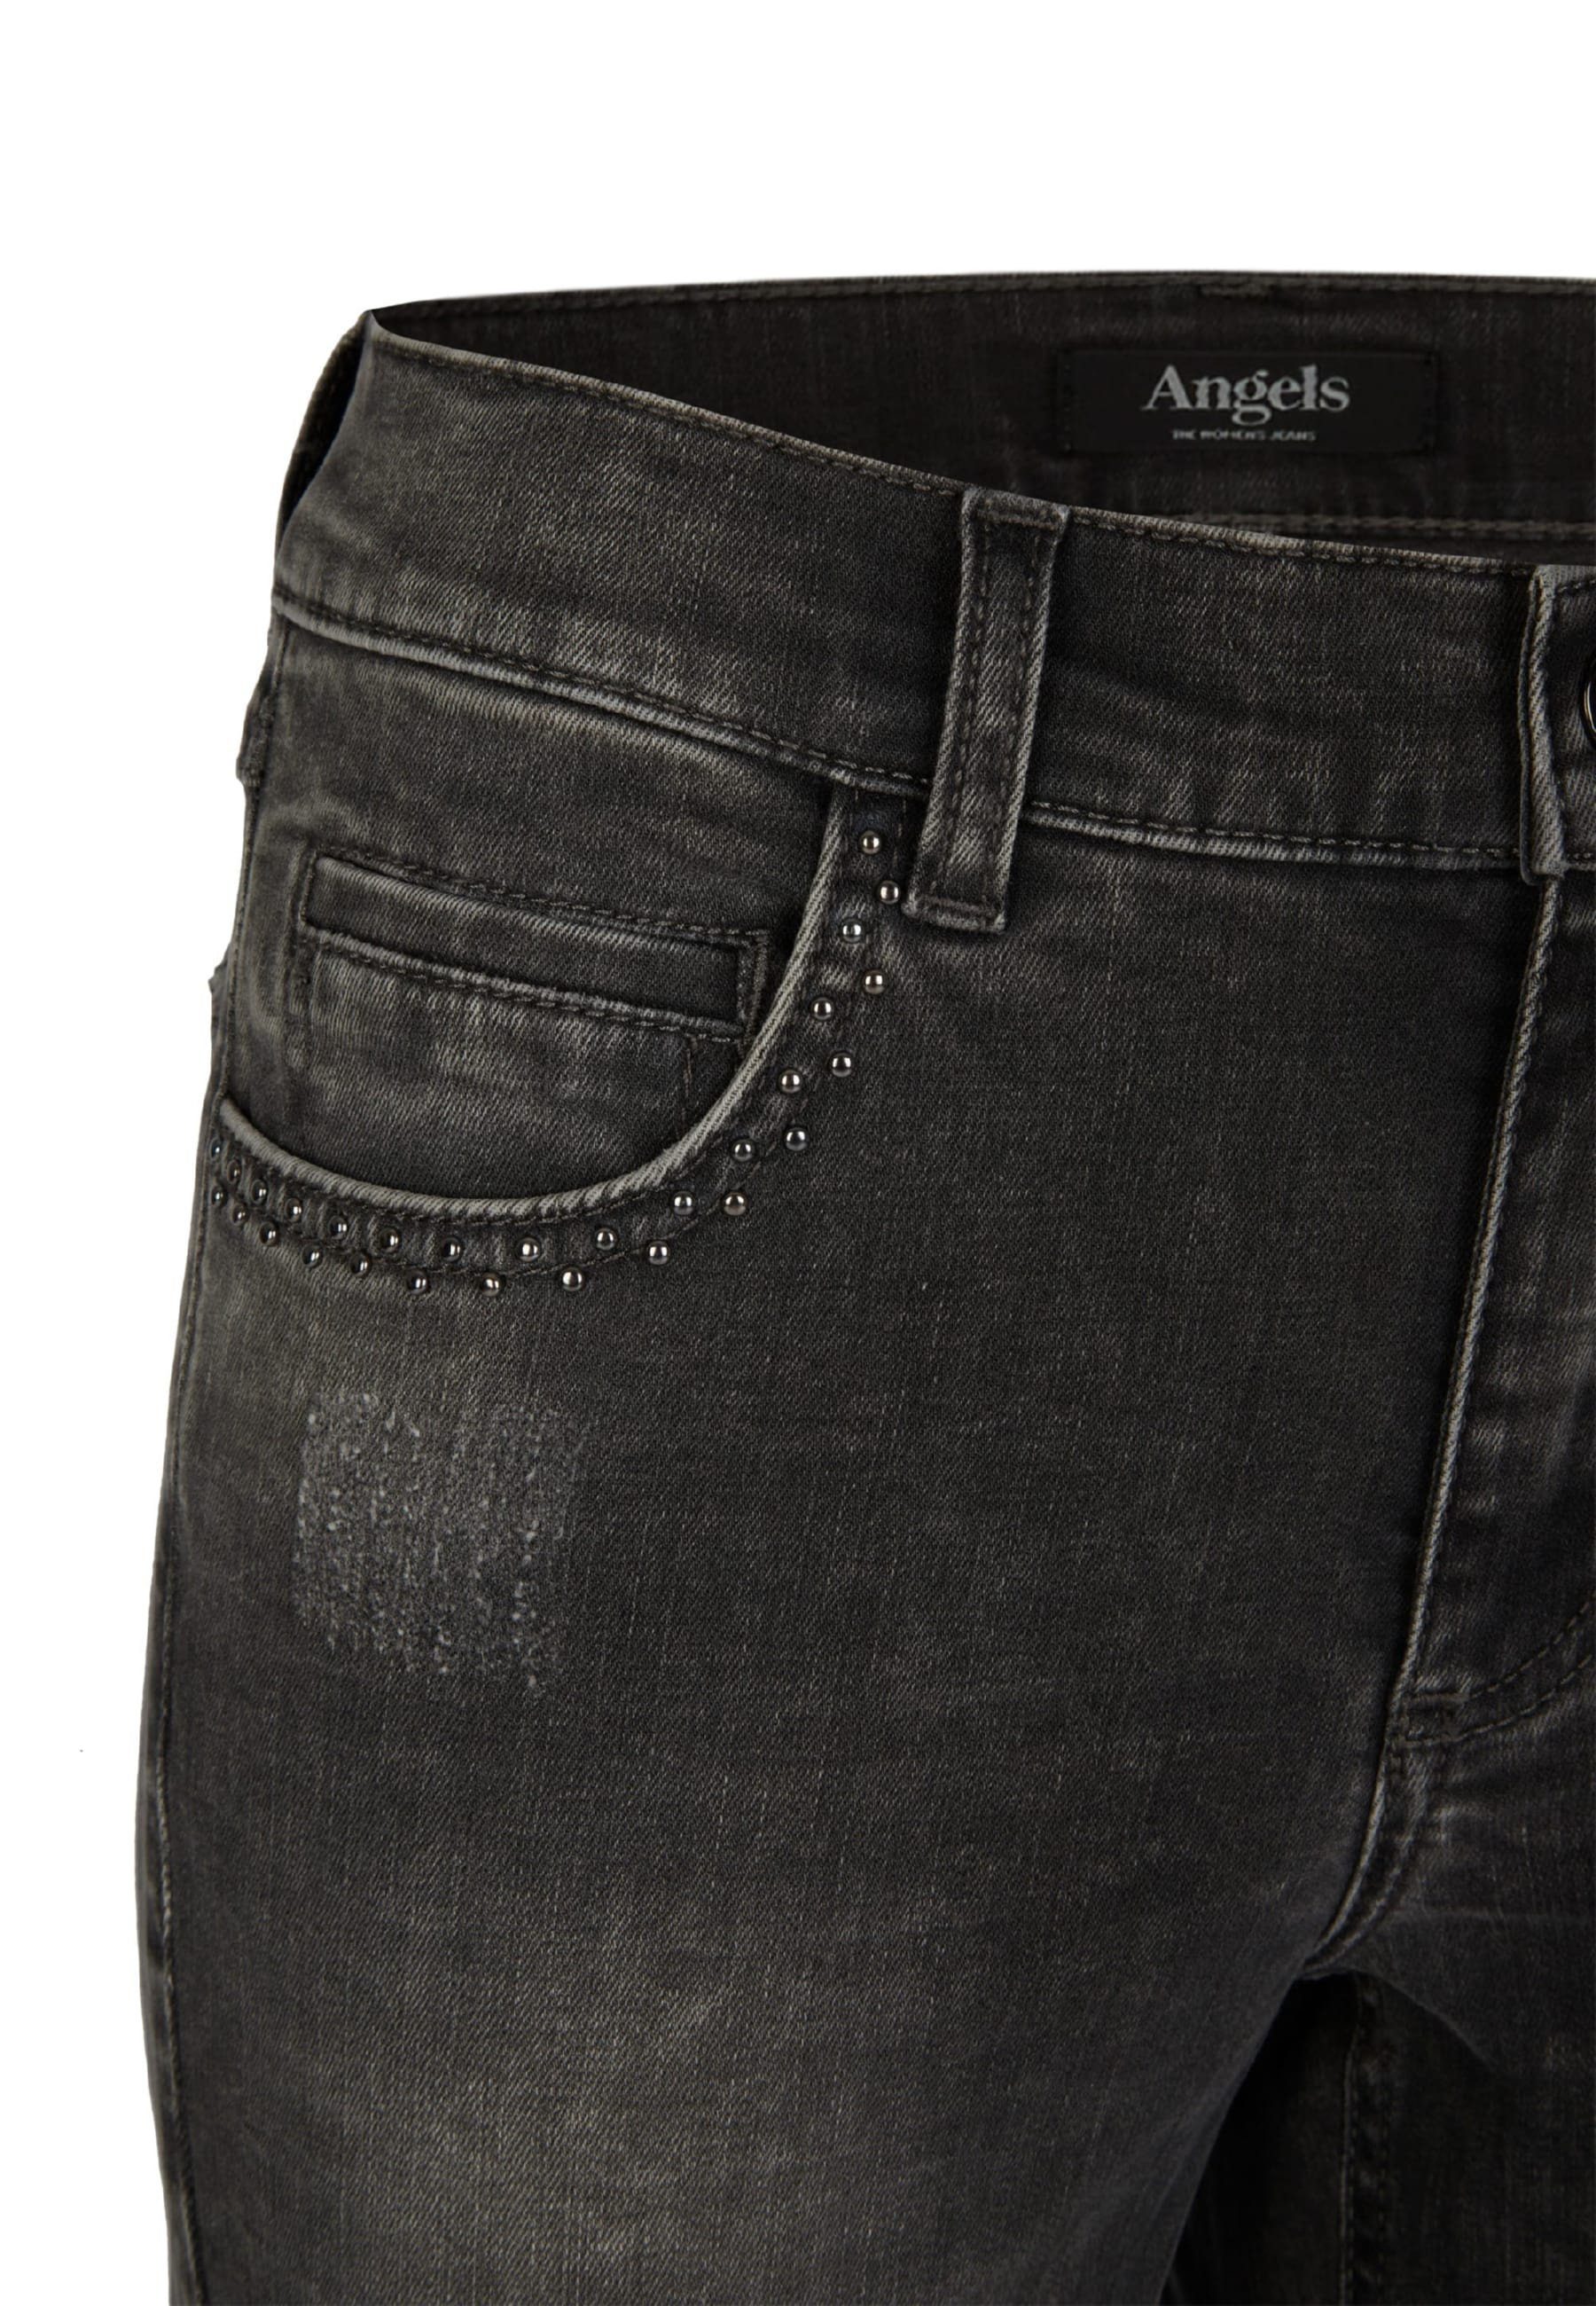 mit Jeans Cici Strass-Steinen Straight-Jeans mit Rock ANGELS Label-Applikationen